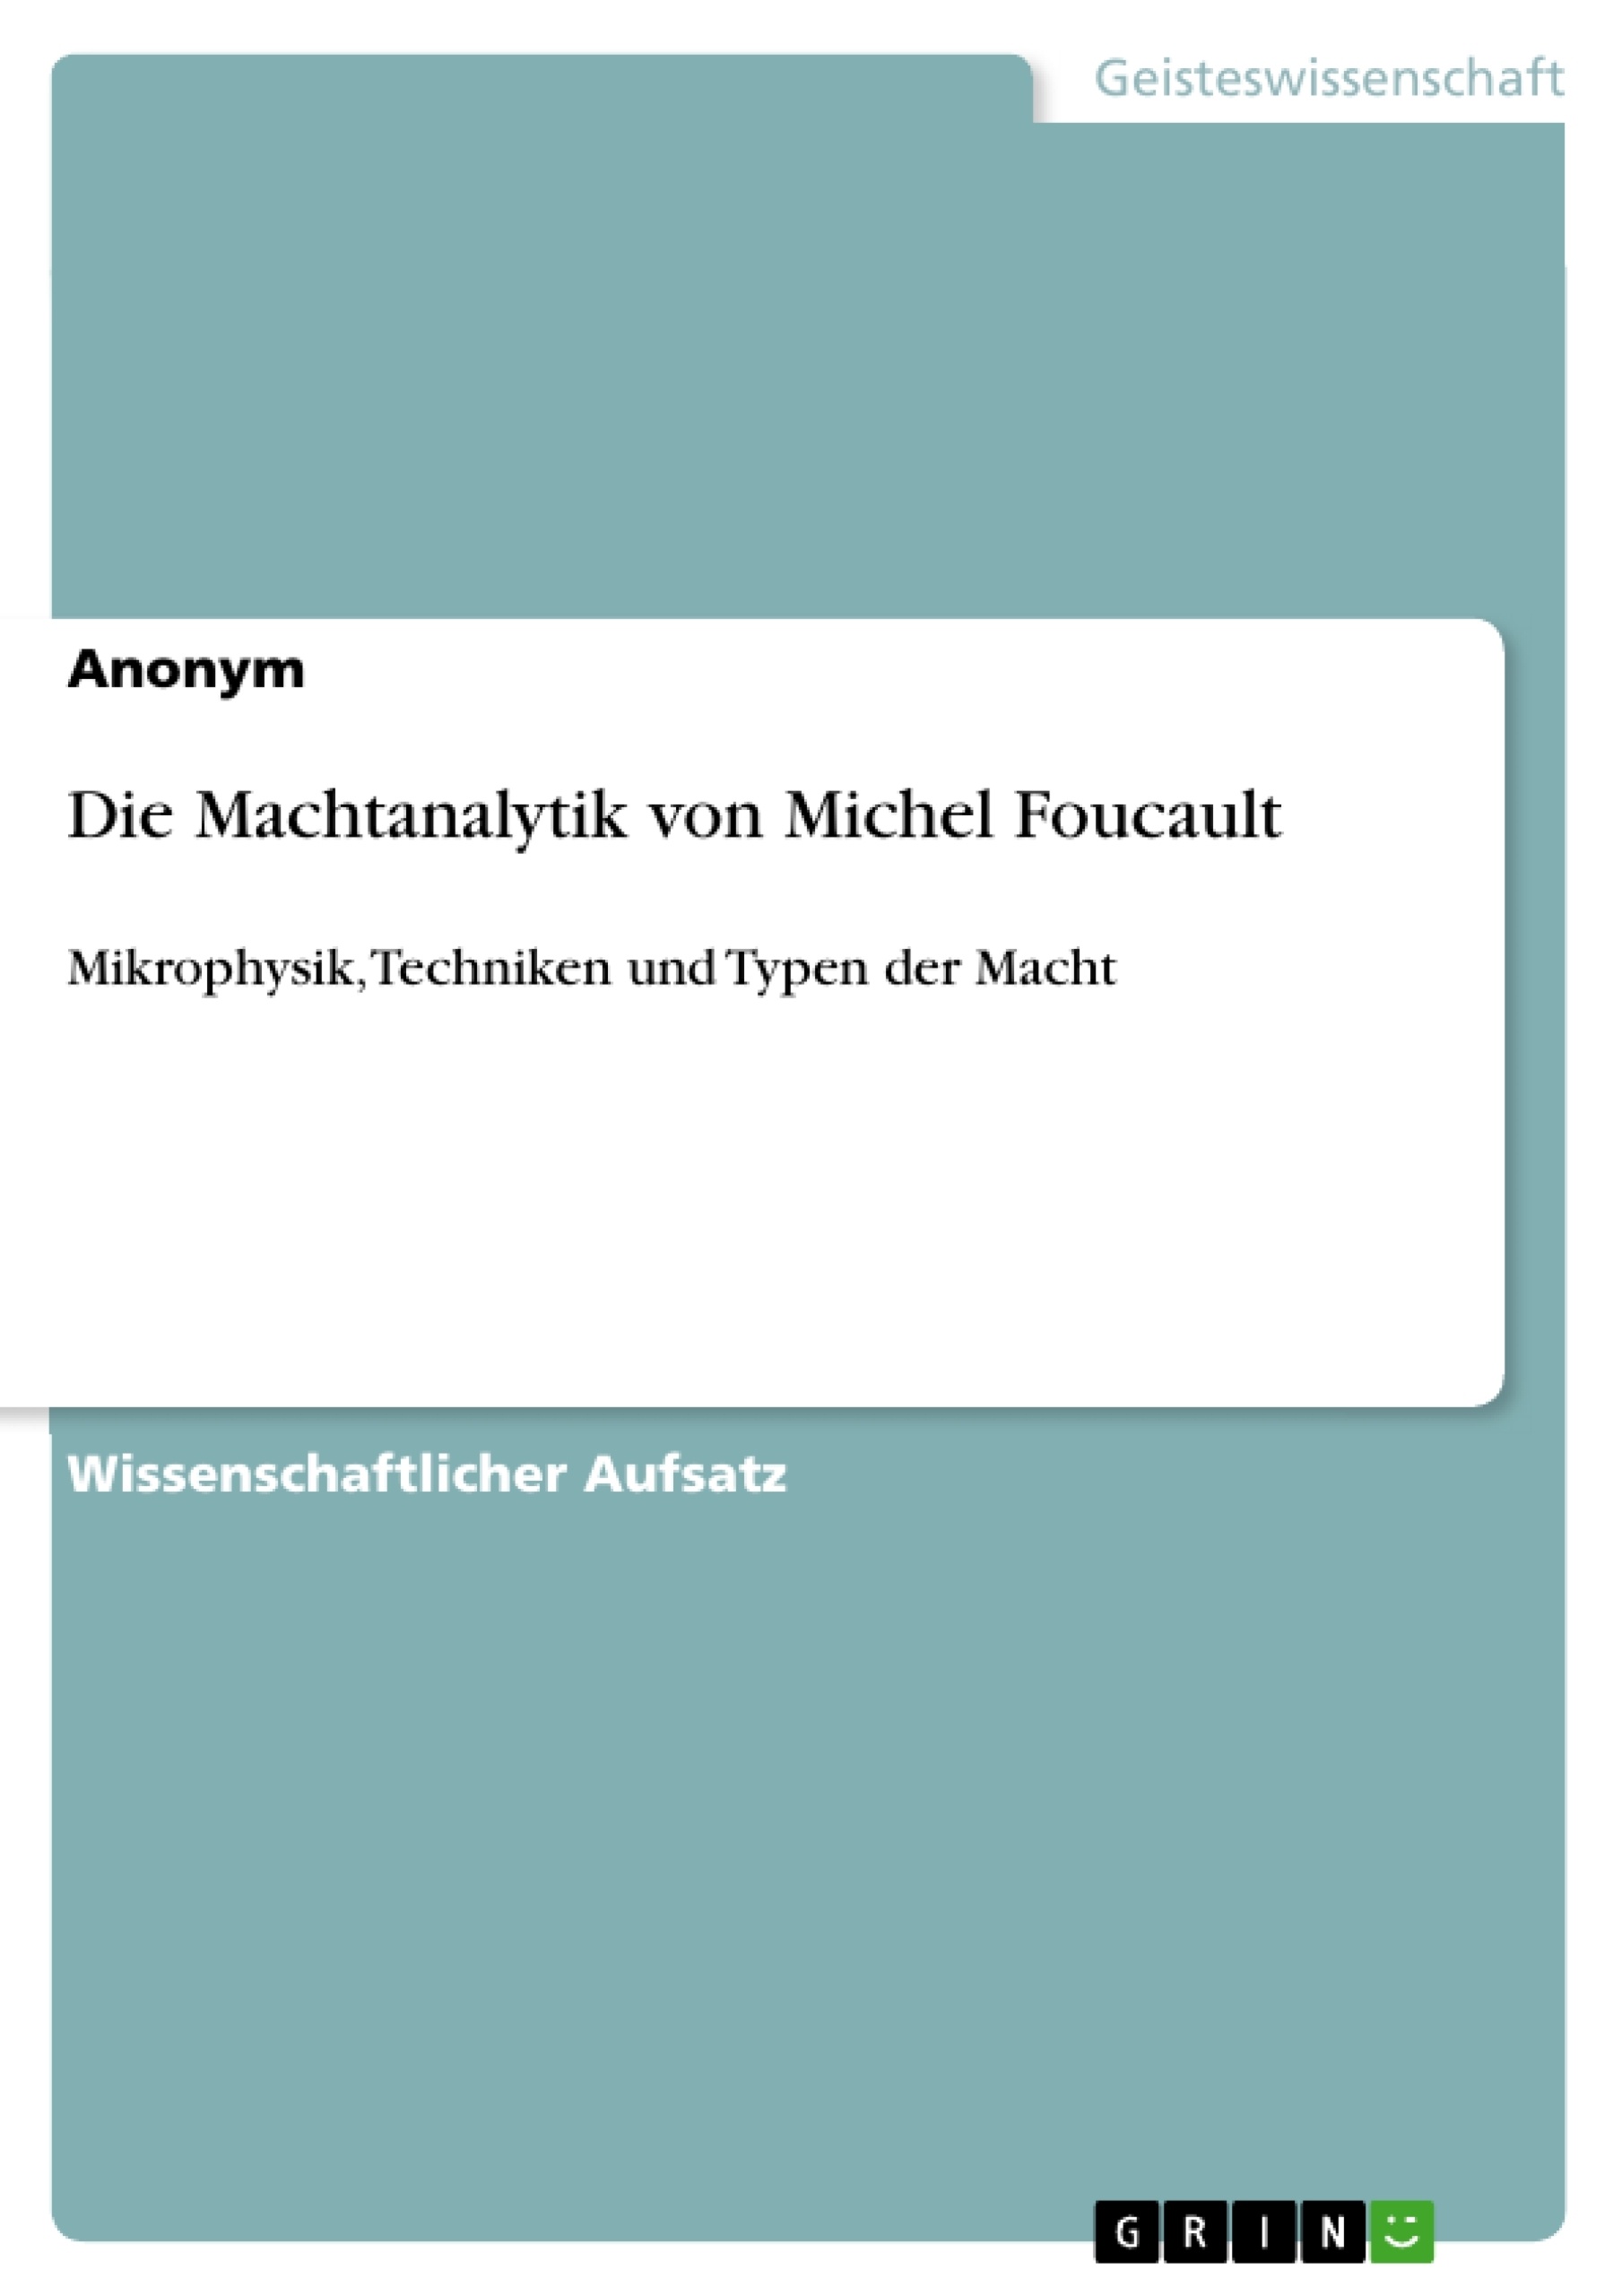 Title: Die Machtanalytik von Michel Foucault